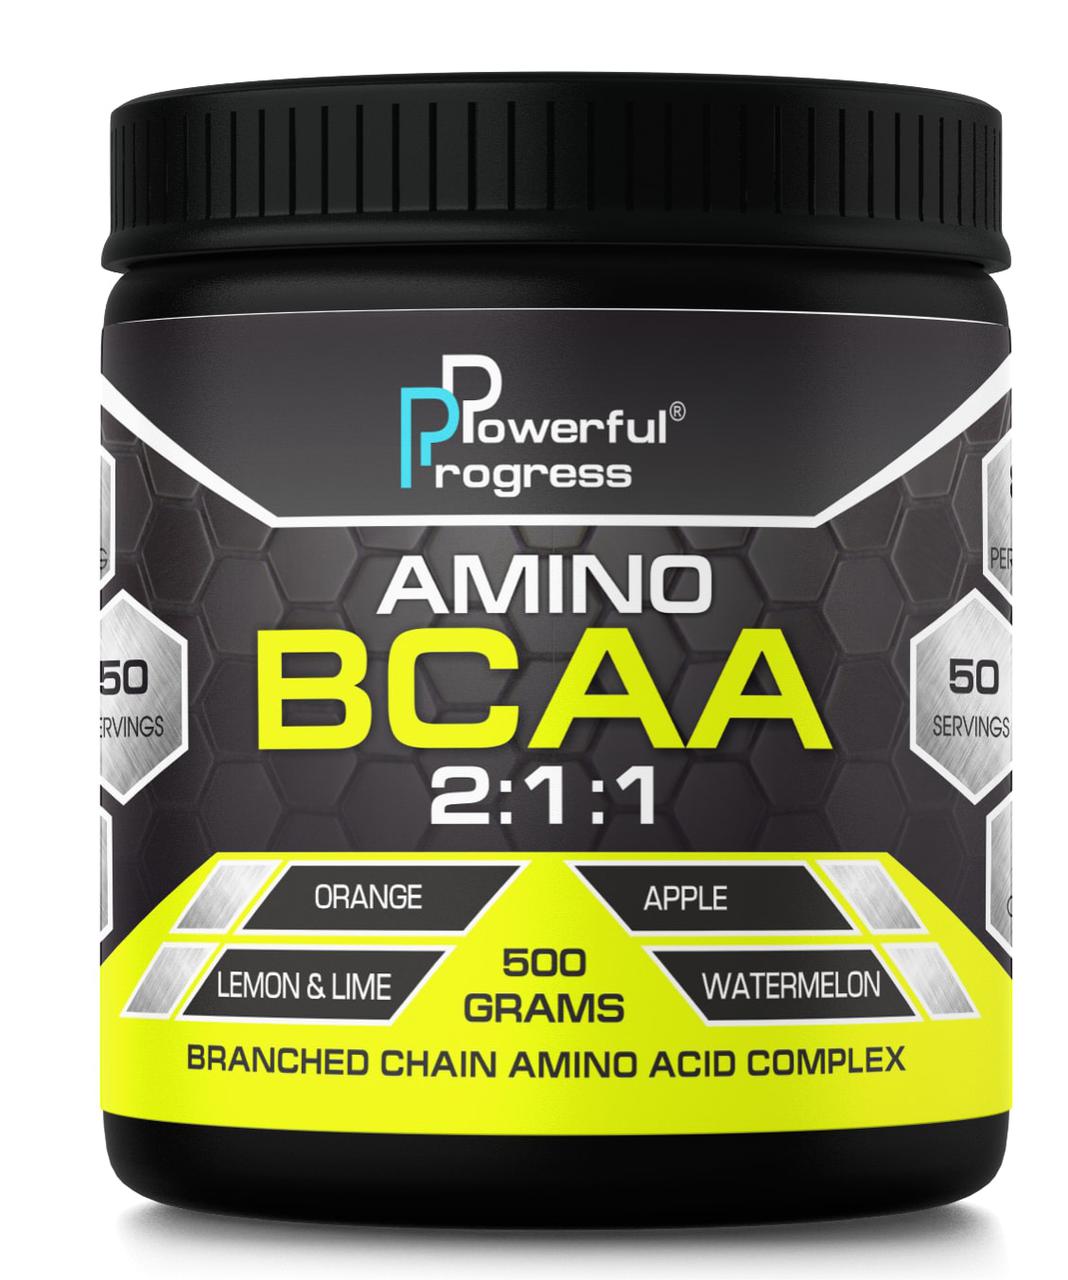 Amino BCAA 2:1:1 Powerful Progress 500 g ,  ml, Powerful Progress. BCAA. Weight Loss स्वास्थ्य लाभ Anti-catabolic properties Lean muscle mass 